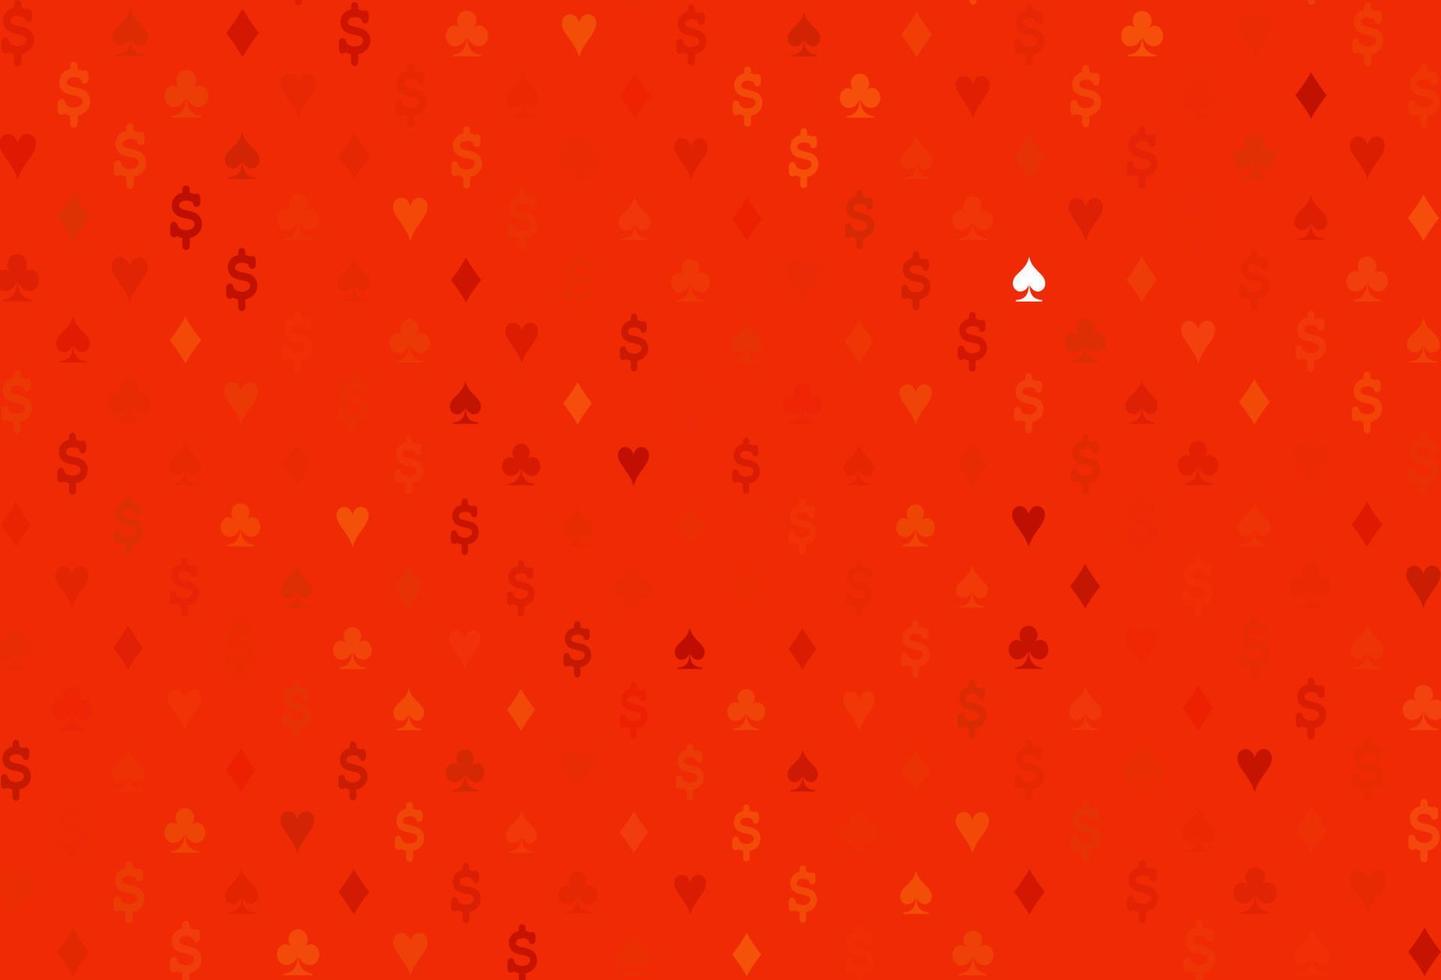 texture vecteur orange clair avec des cartes à jouer.